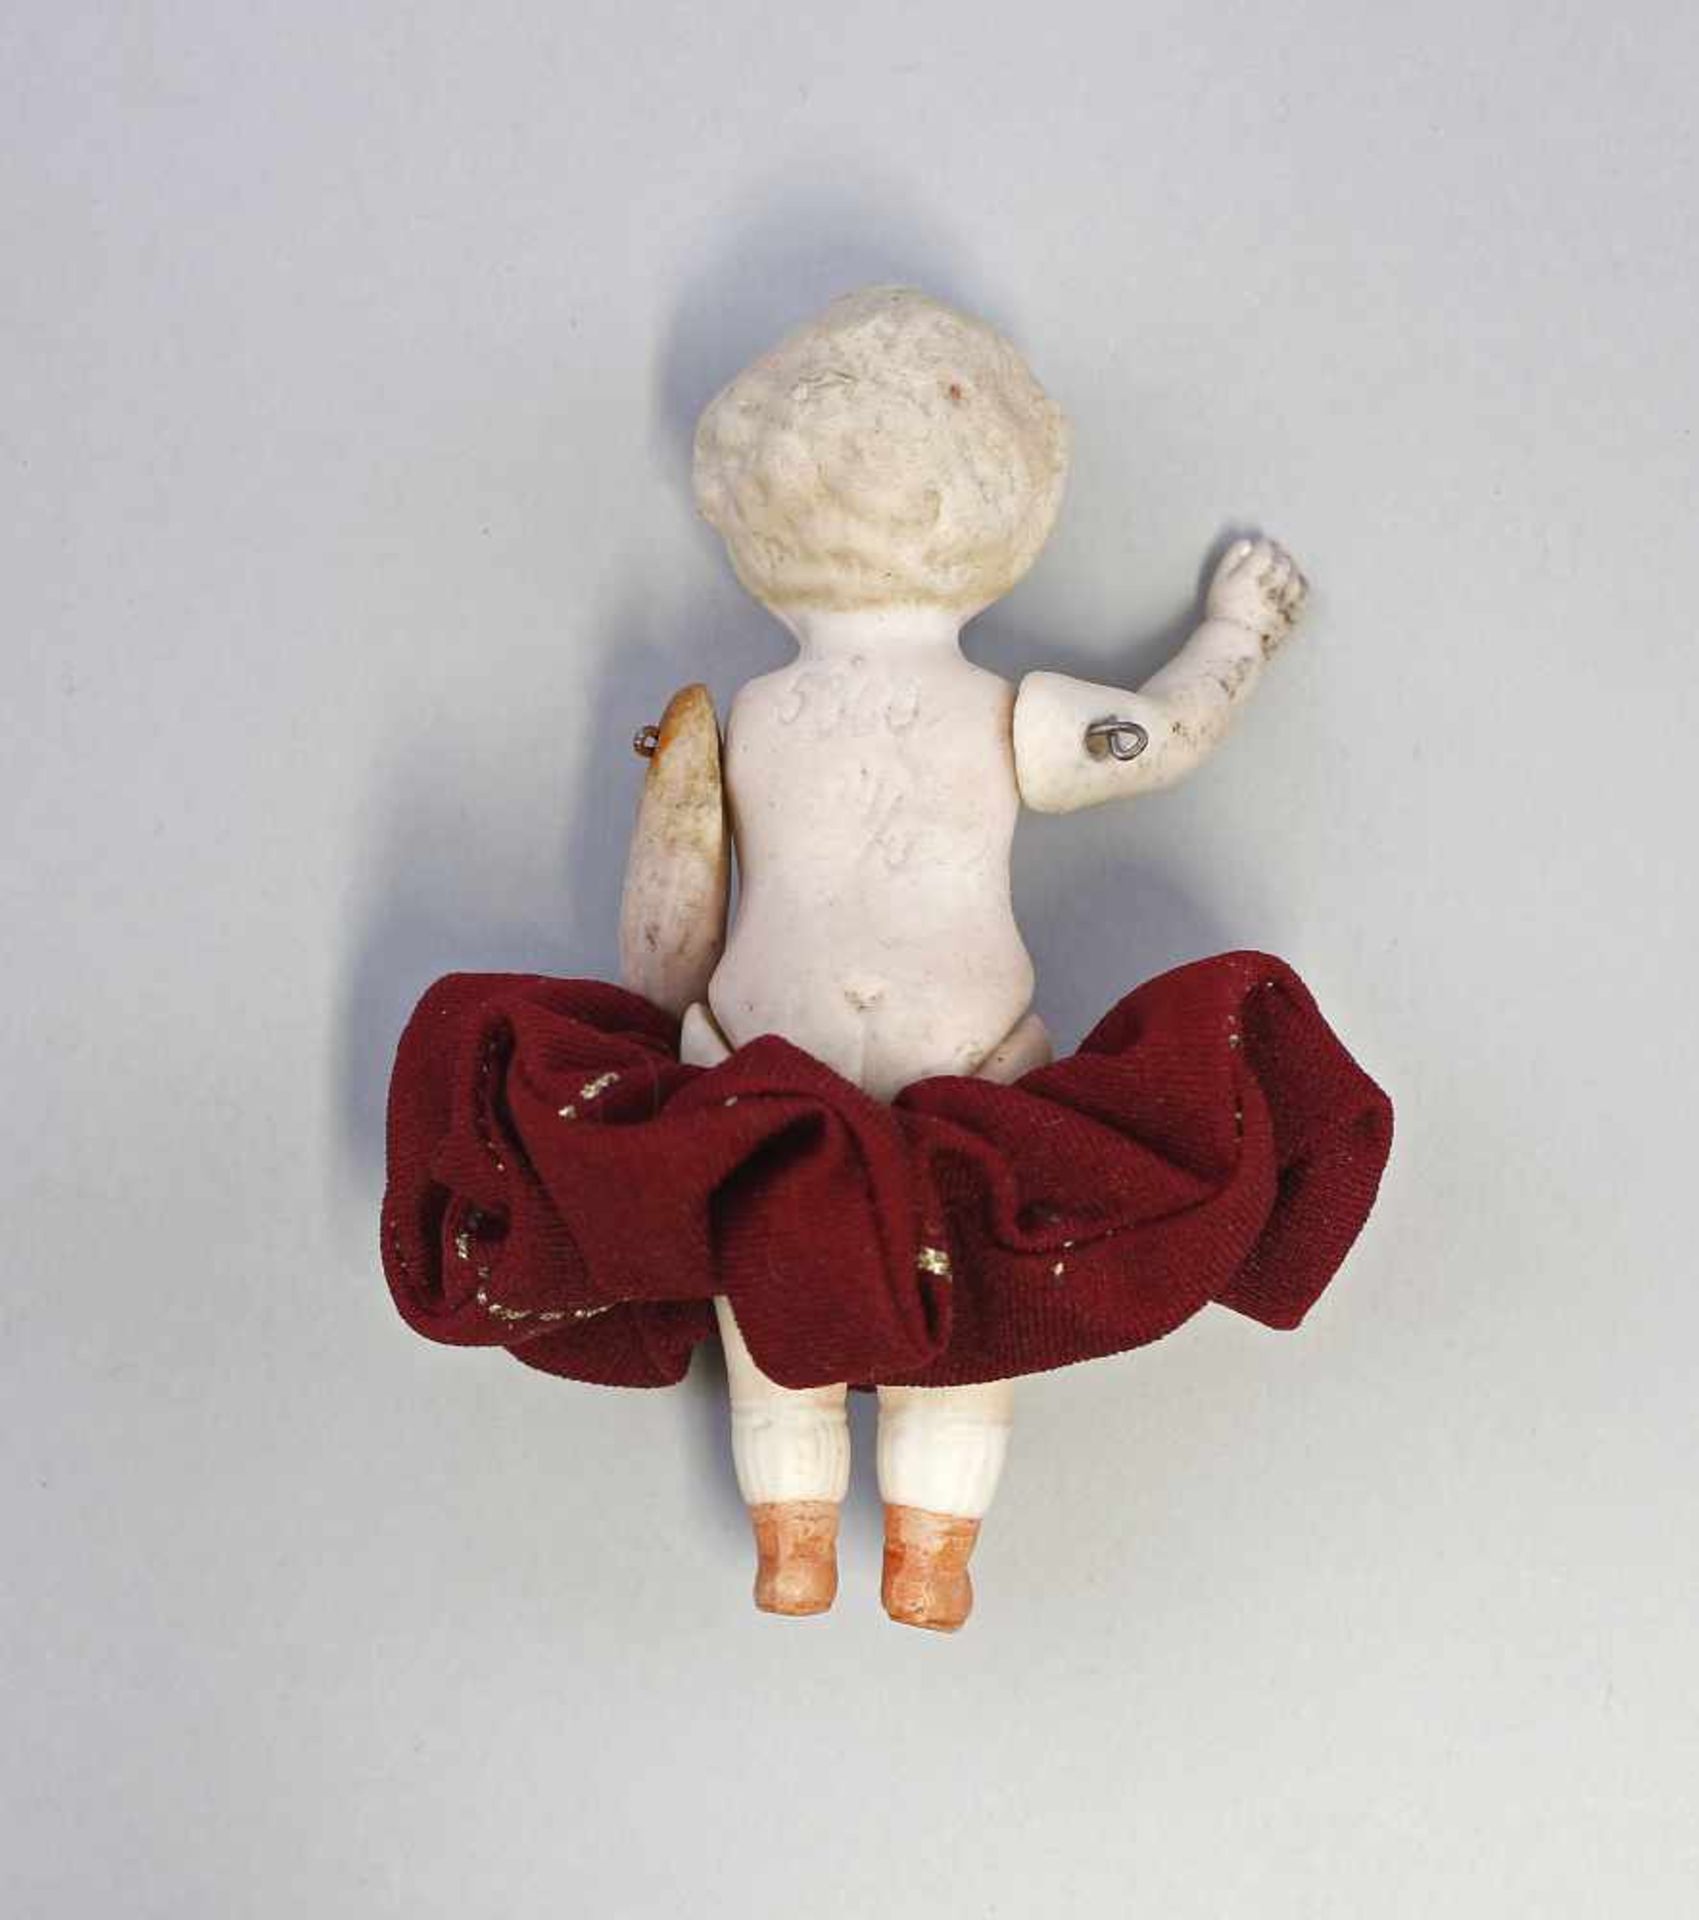 Ganz-Bisk.-Porz.-Puppenstubenpuppe um 1900, anmod. blondes Haar, Arme und Beine mit Draht - Bild 2 aus 2